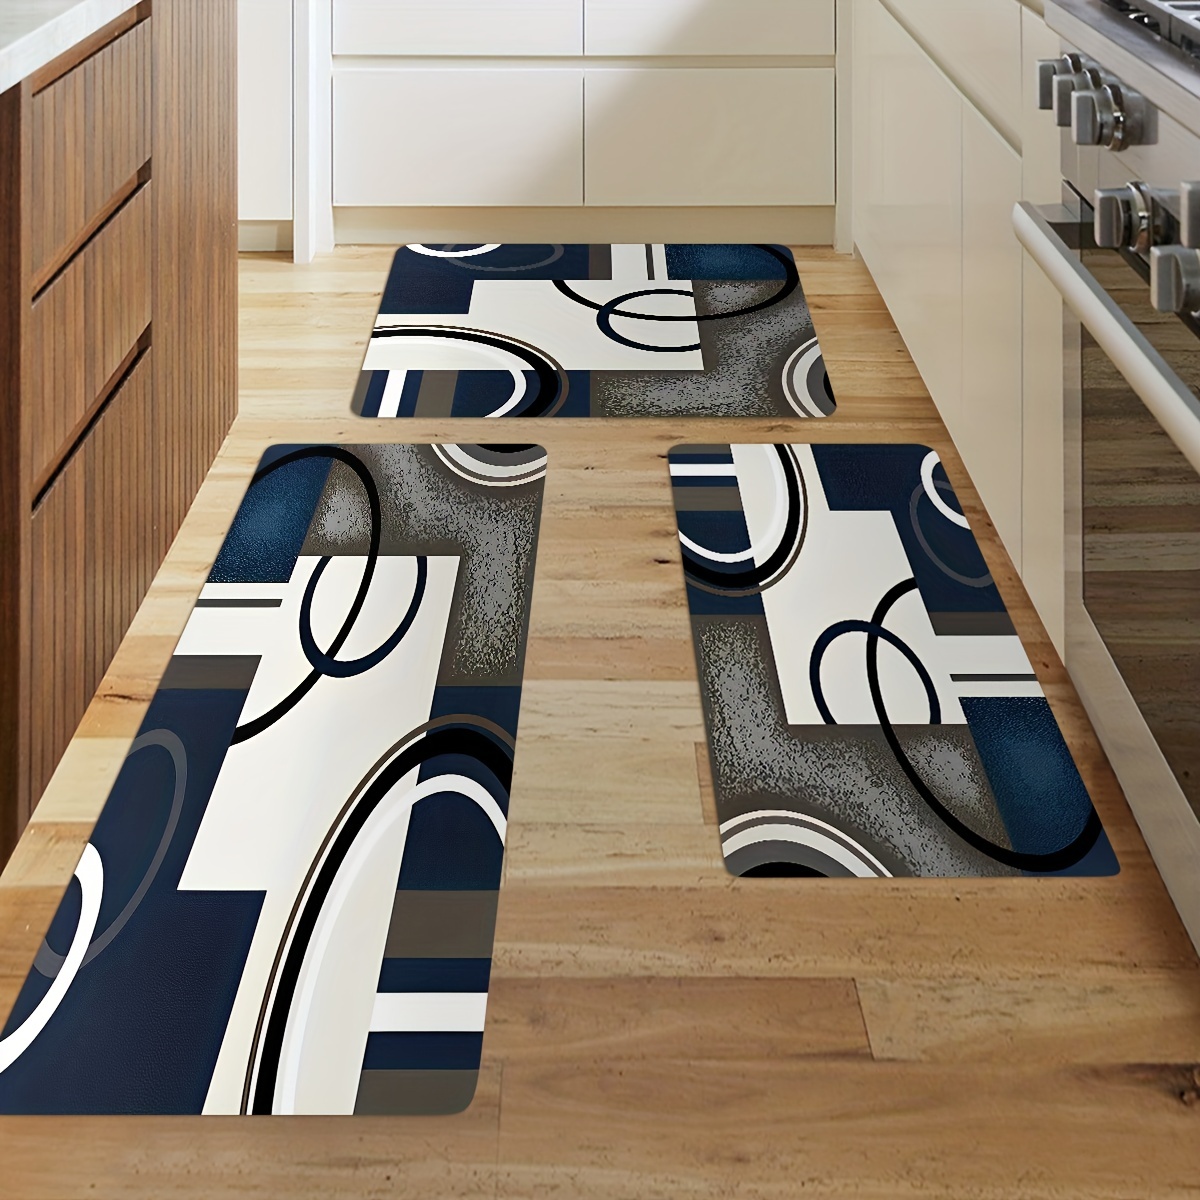 Tapetes y alfombras de cocina con respaldo de goma antideslizante para  cocina, acolchados, suaves, absorbentes de agua, lavables, tapete de  cocina